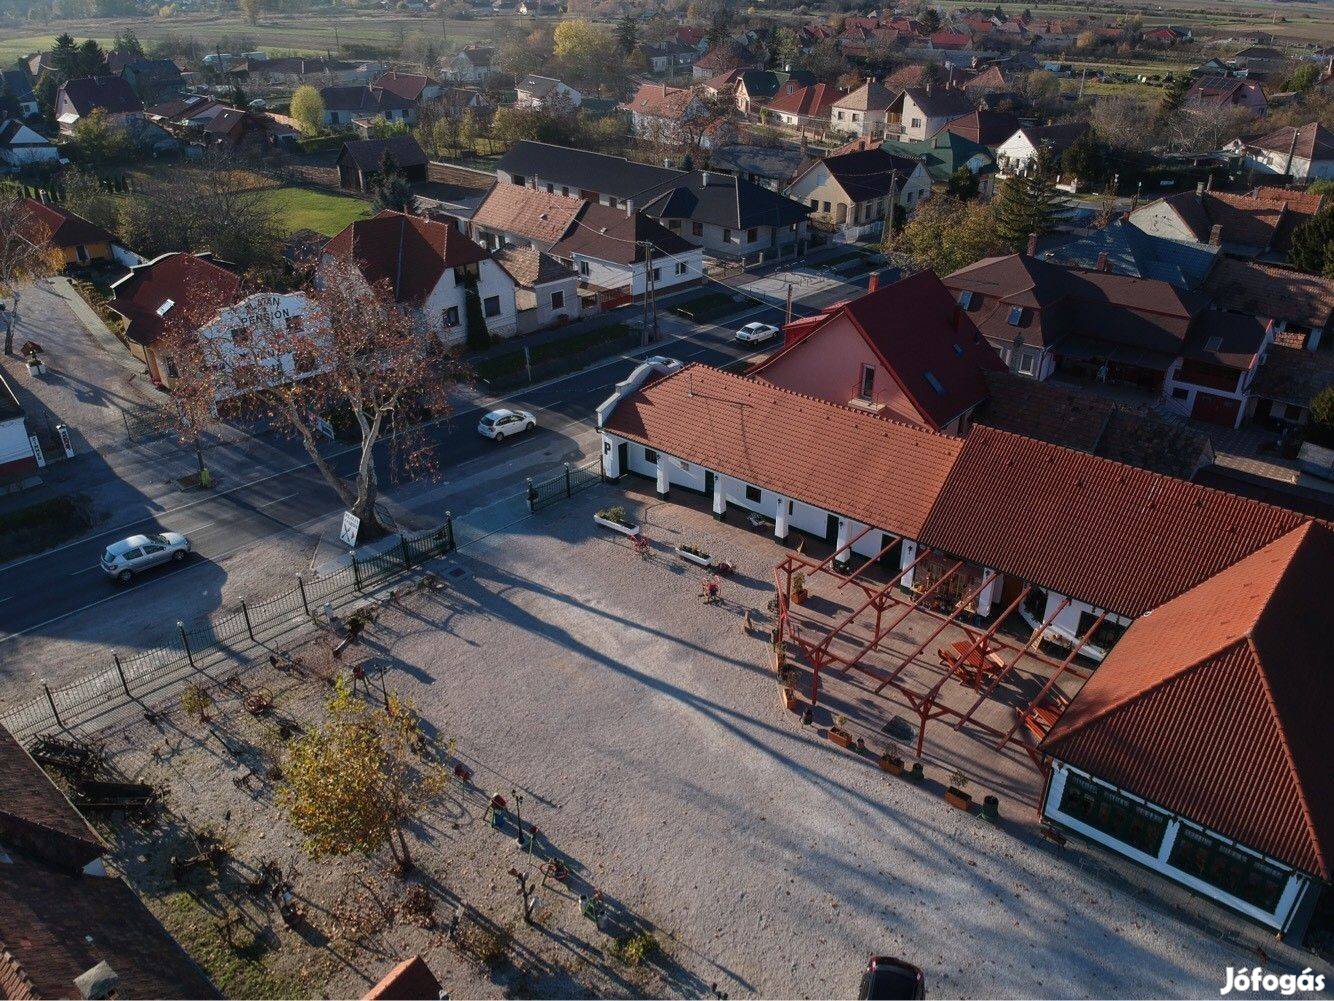 Azonnal üzemeltethető, jól jövedelmező épületkomplexum Győrtől 8 km-r